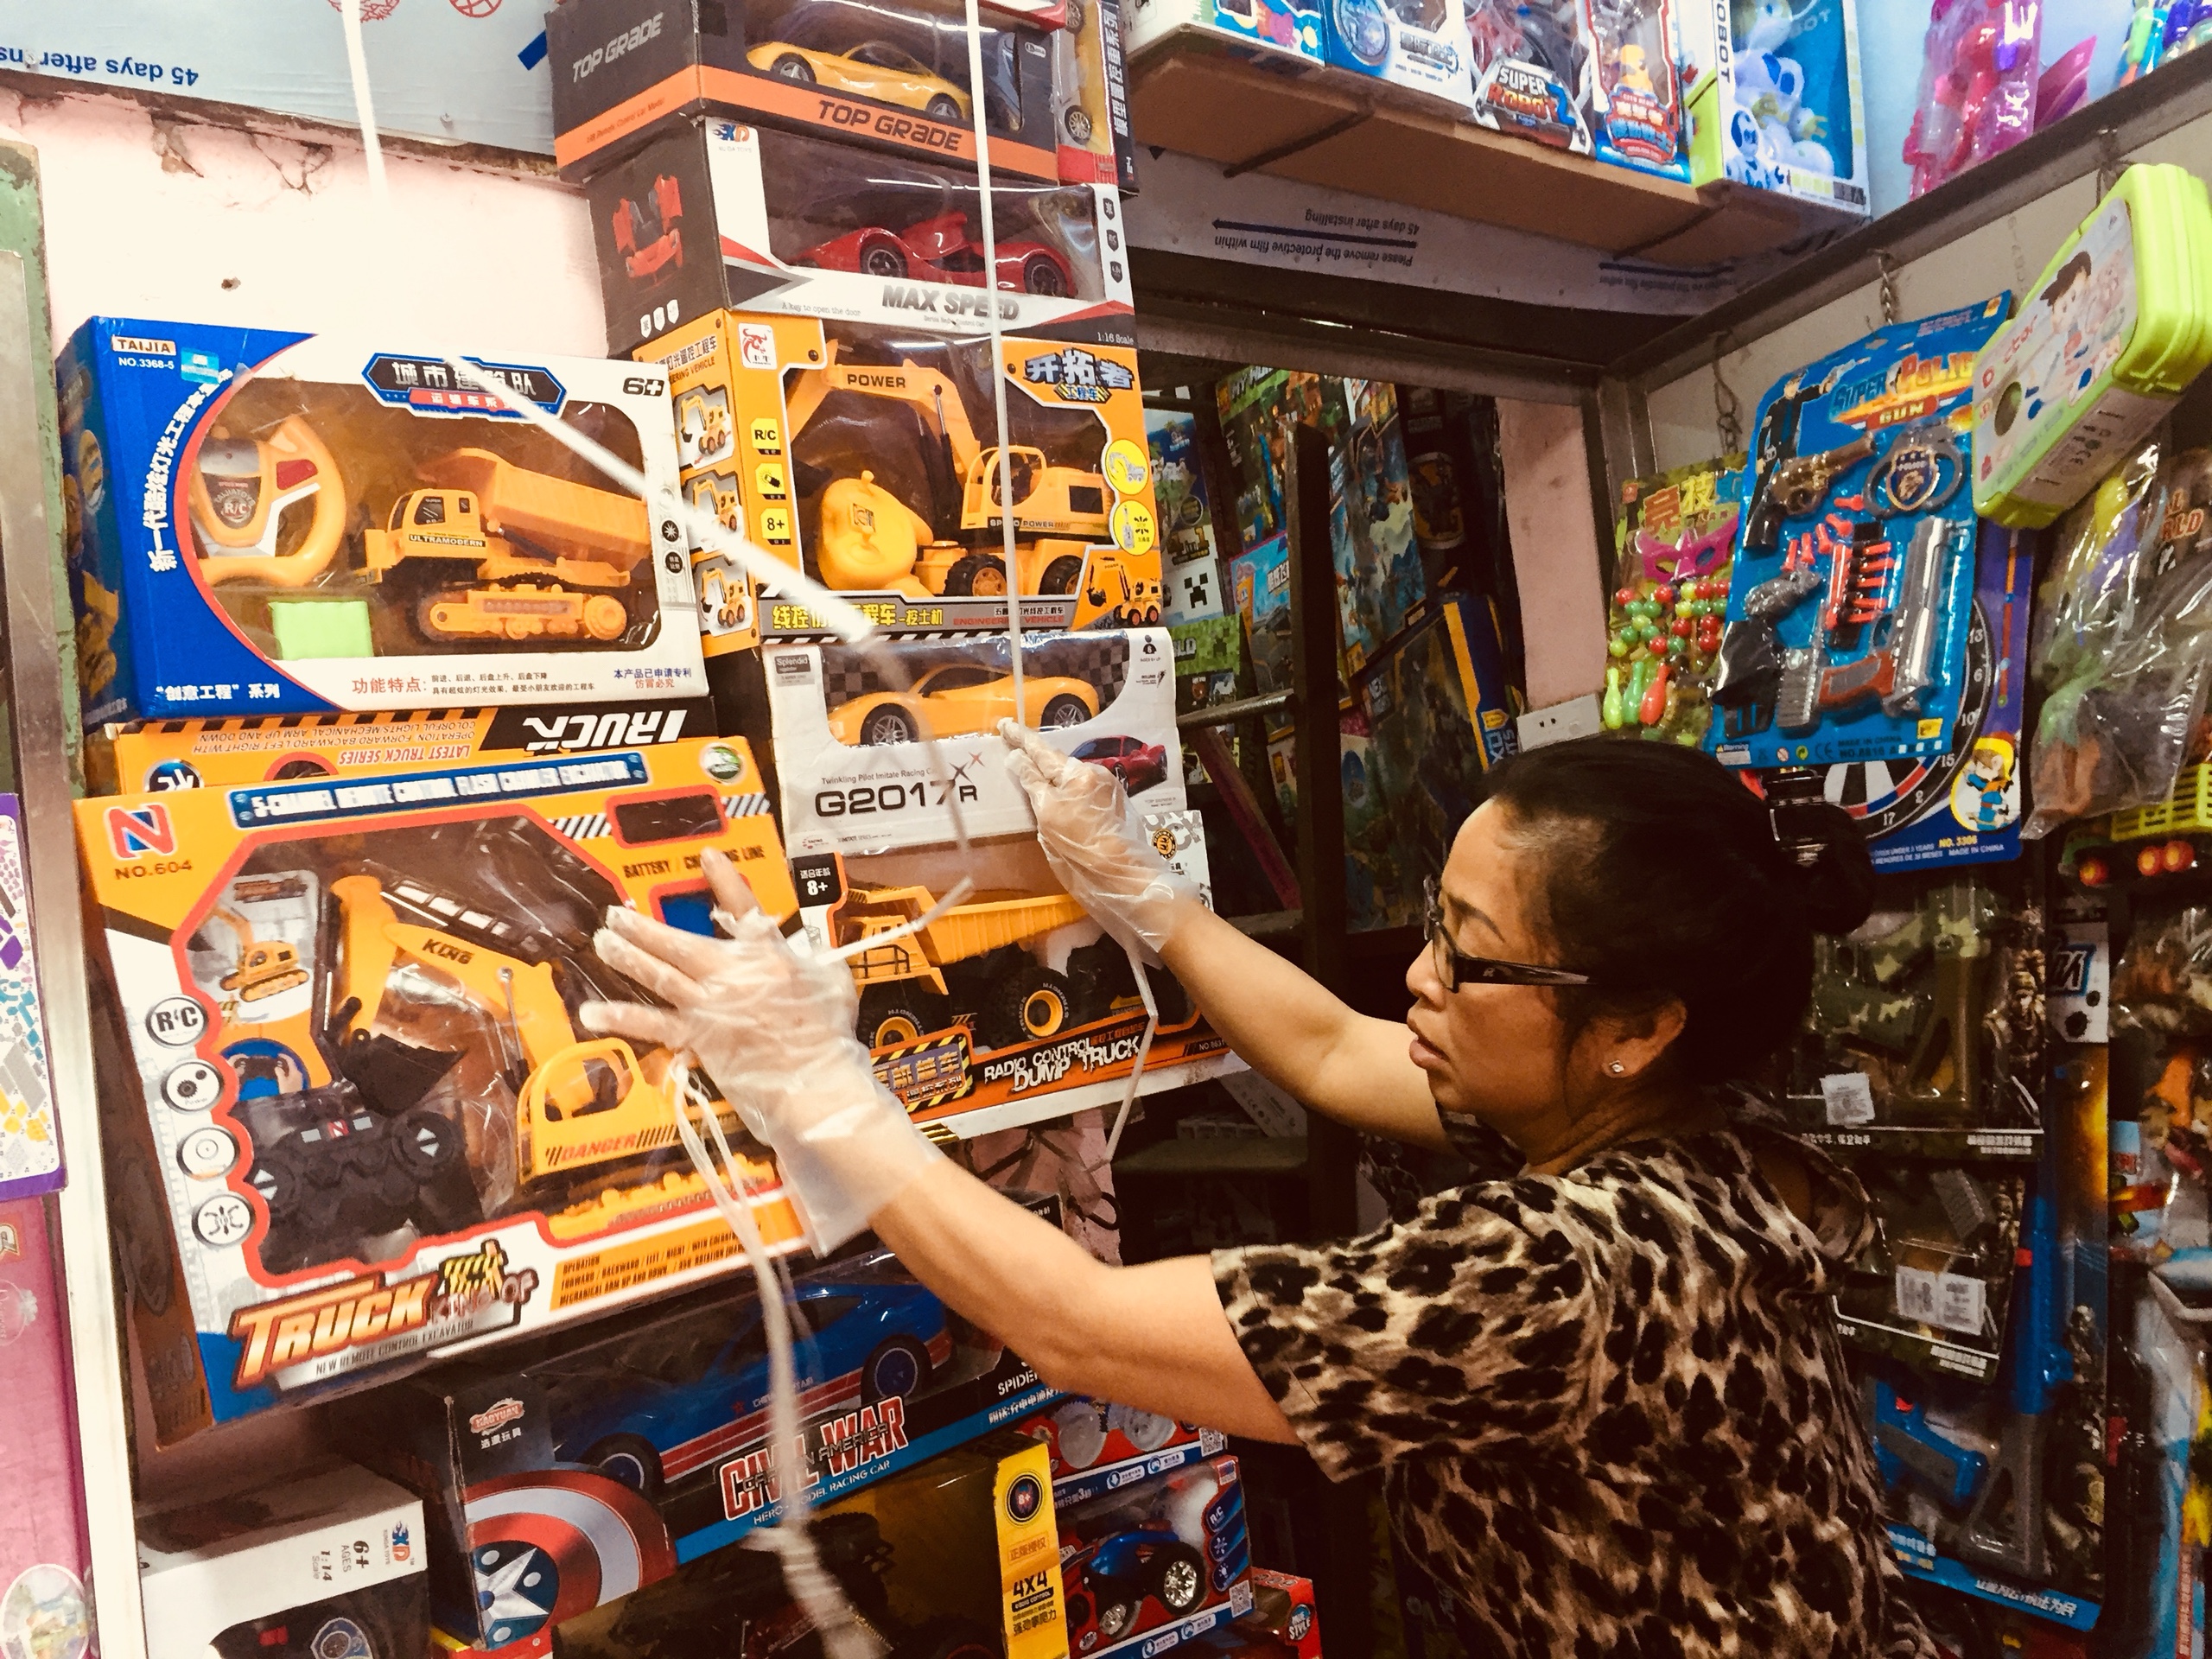 Doanh nghiệp sản xuất đồ chơi trong nước và bài toán xây dựng thương hiệu ‘made in Vietnam’